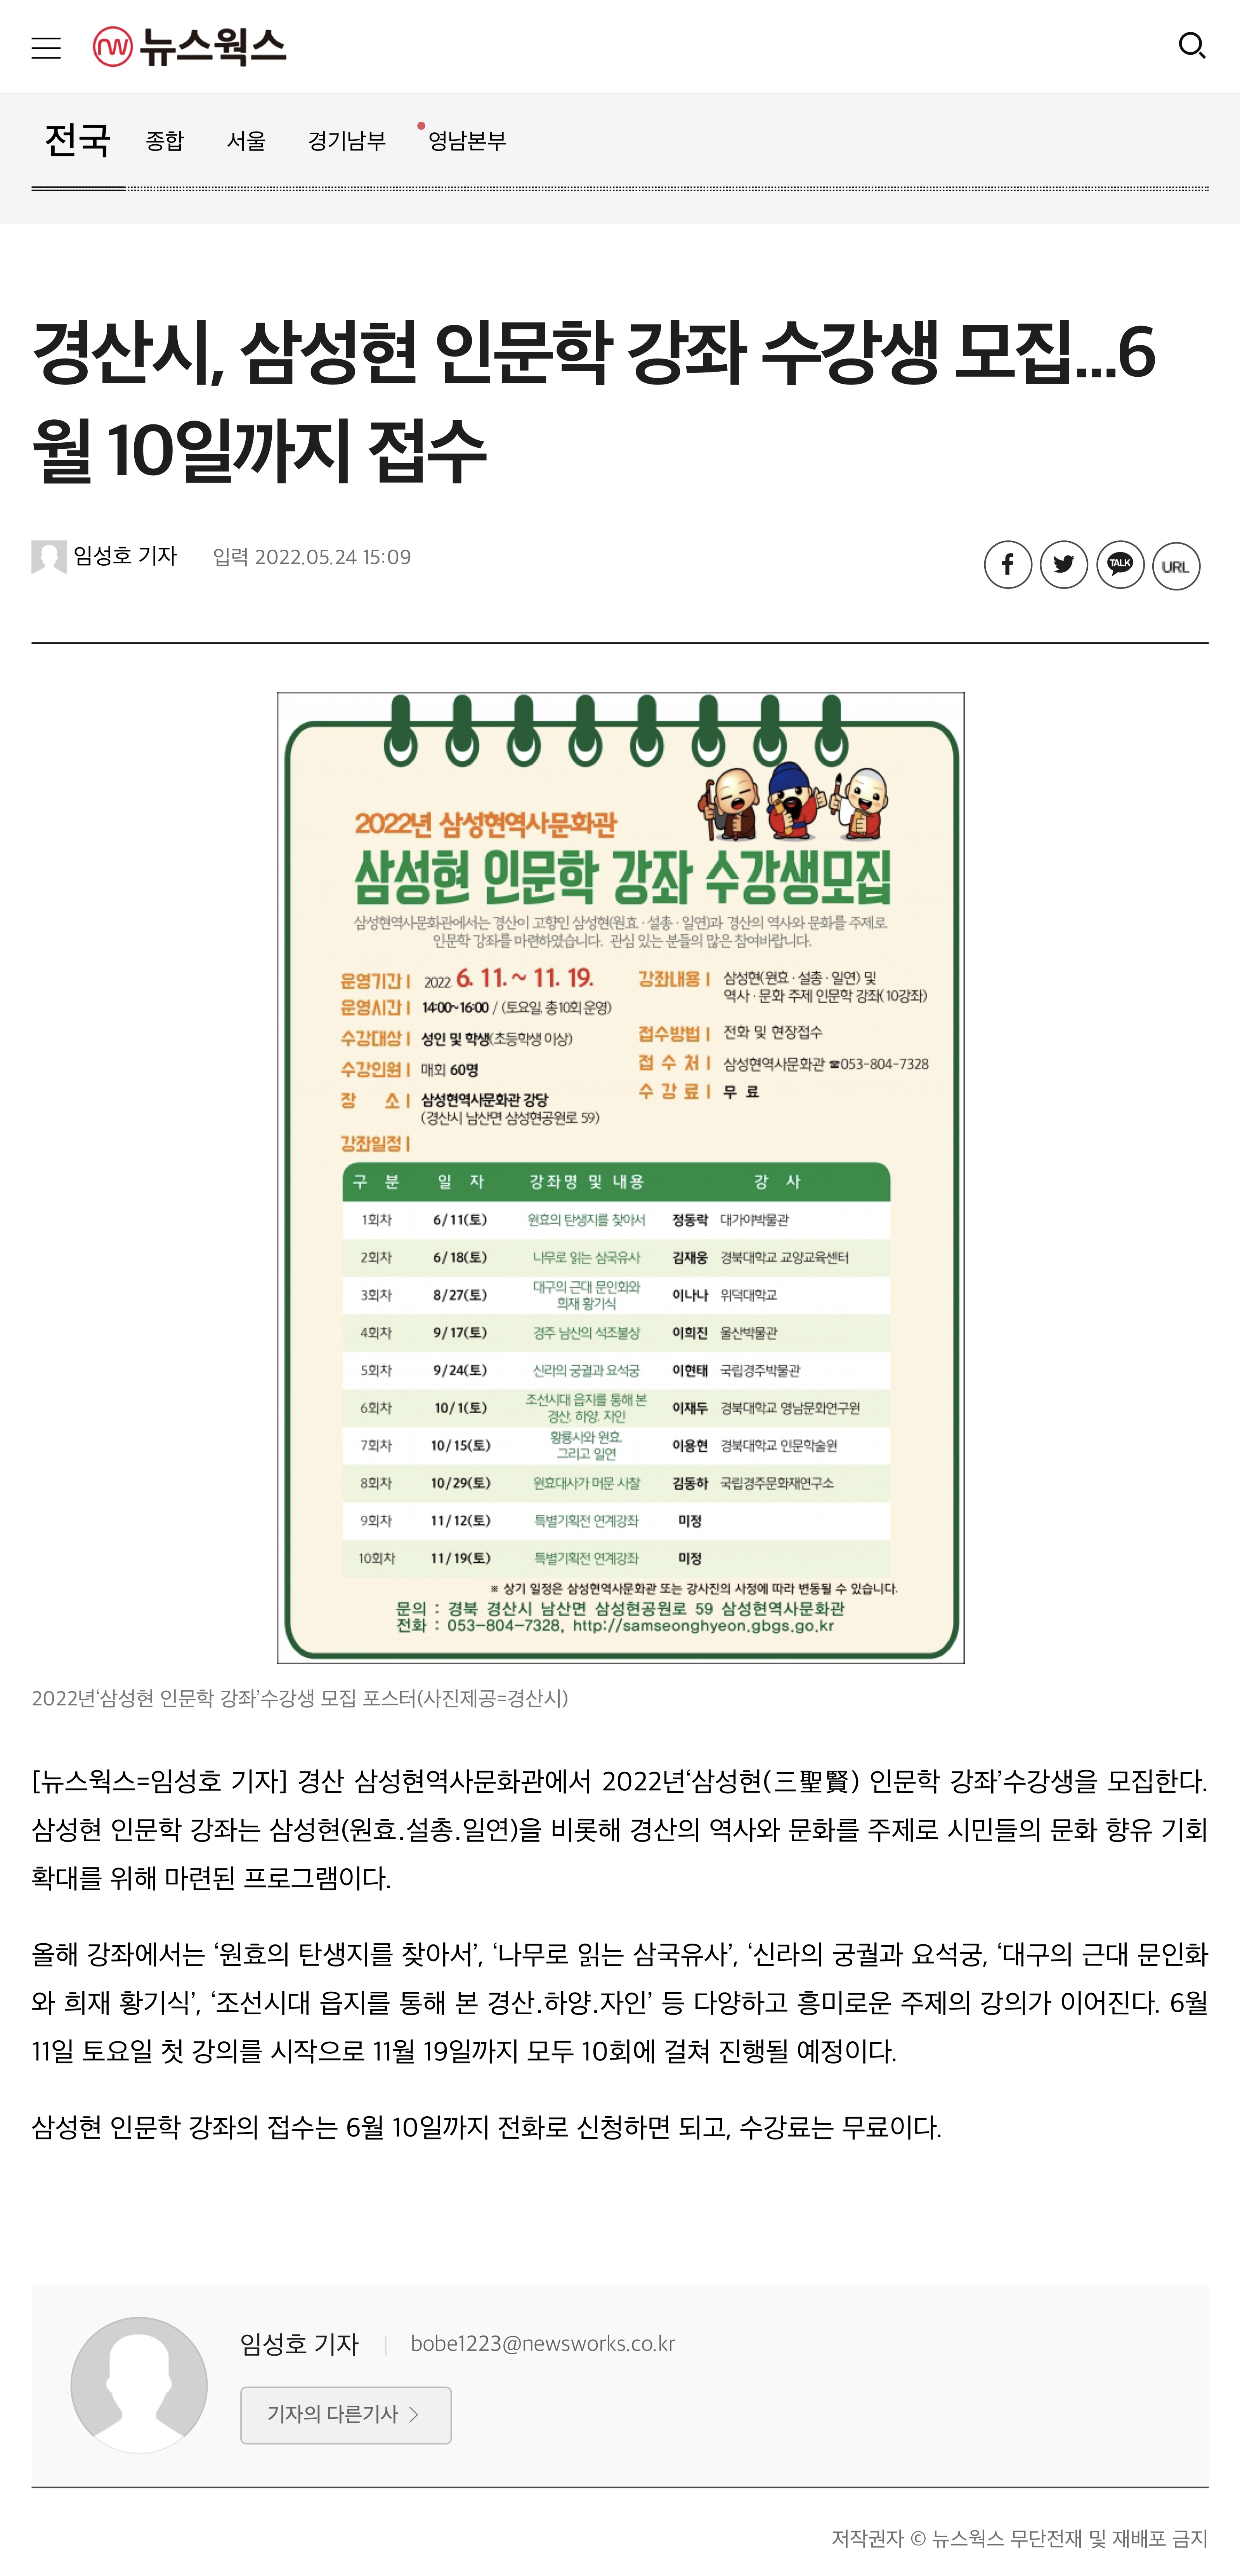 20220524 - 경산시, 삼성현 인문학 강좌 수강생 모집-1...6월 10일까지 접수(뉴스웍스 임성호 기자).jpeg